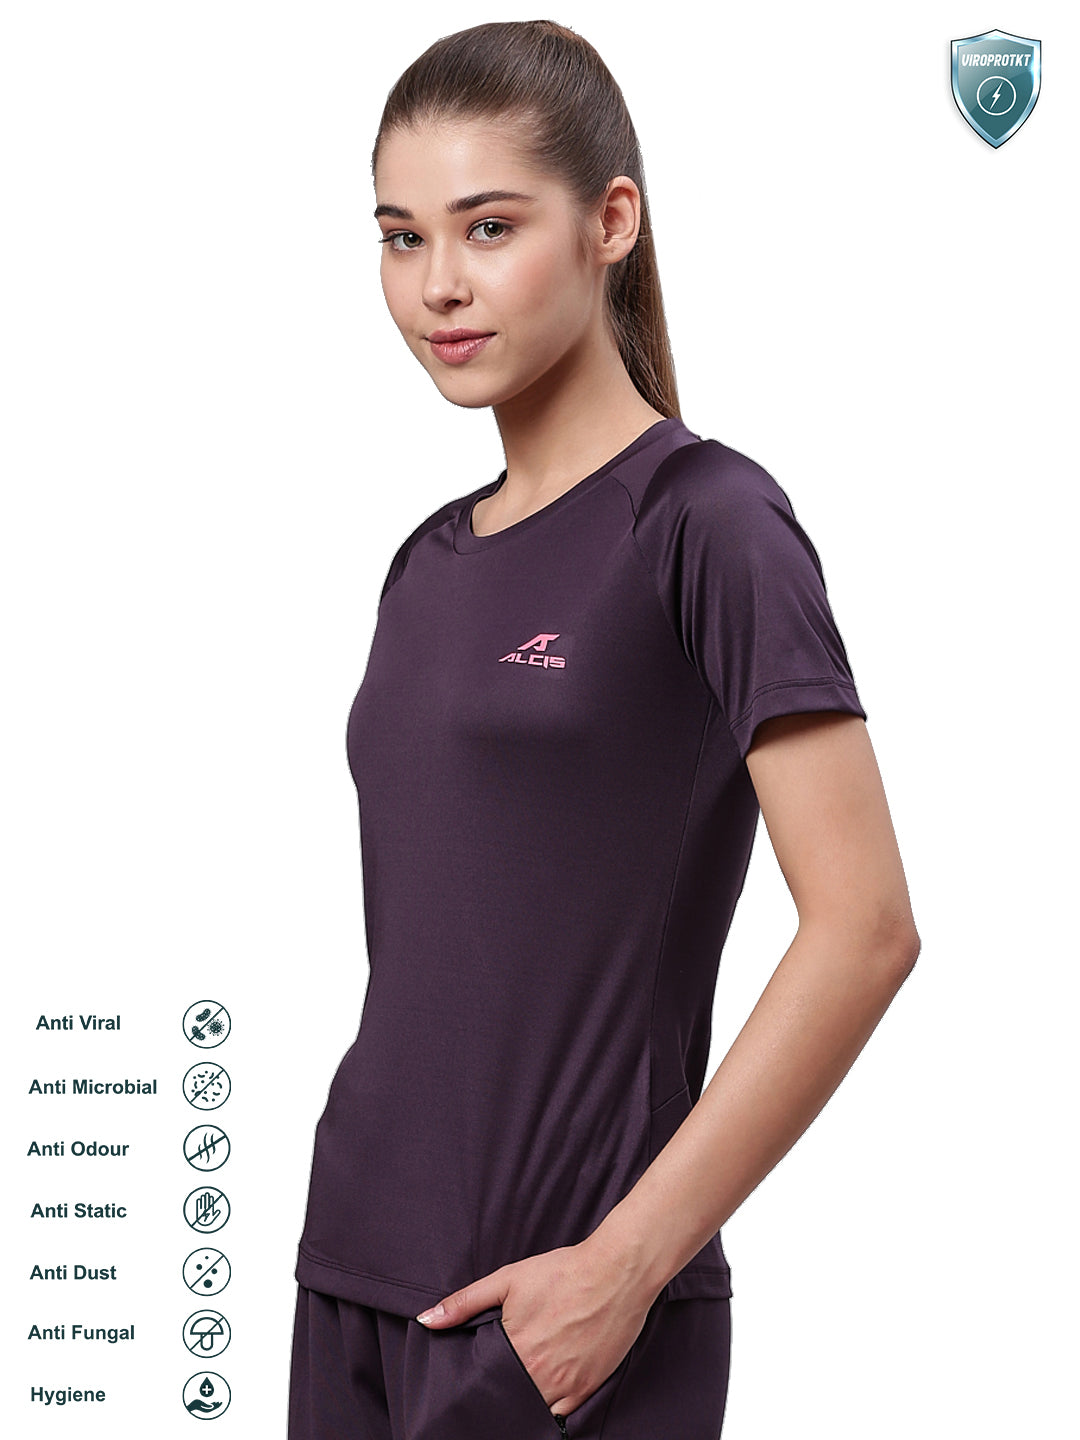 Alcis Women Aubergine Solid Round Neck VIROPROTKT Training T-shirt